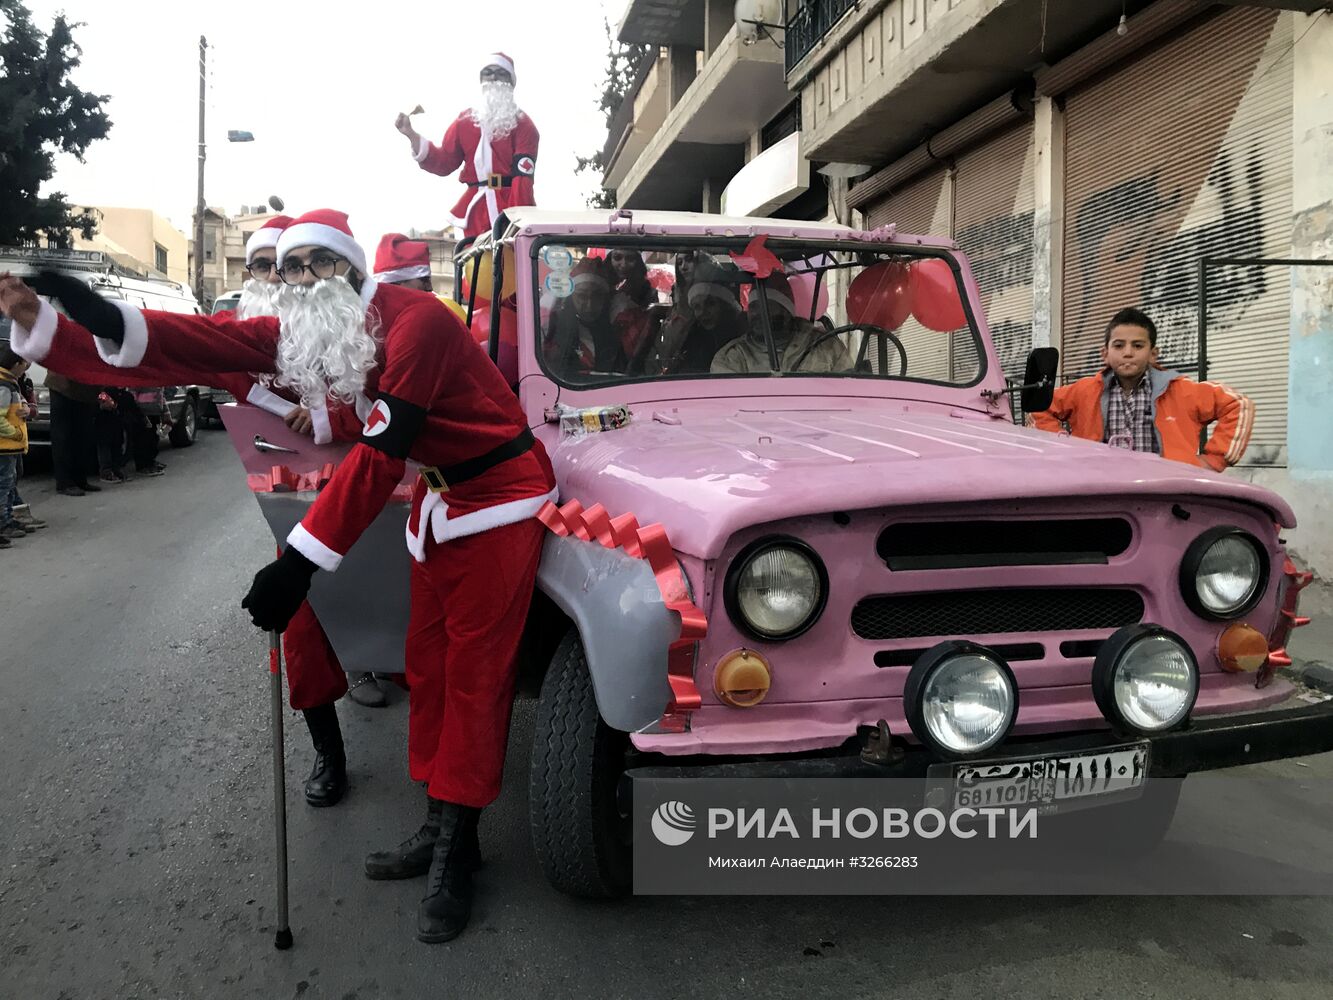 Празднование Рождества в Сирии